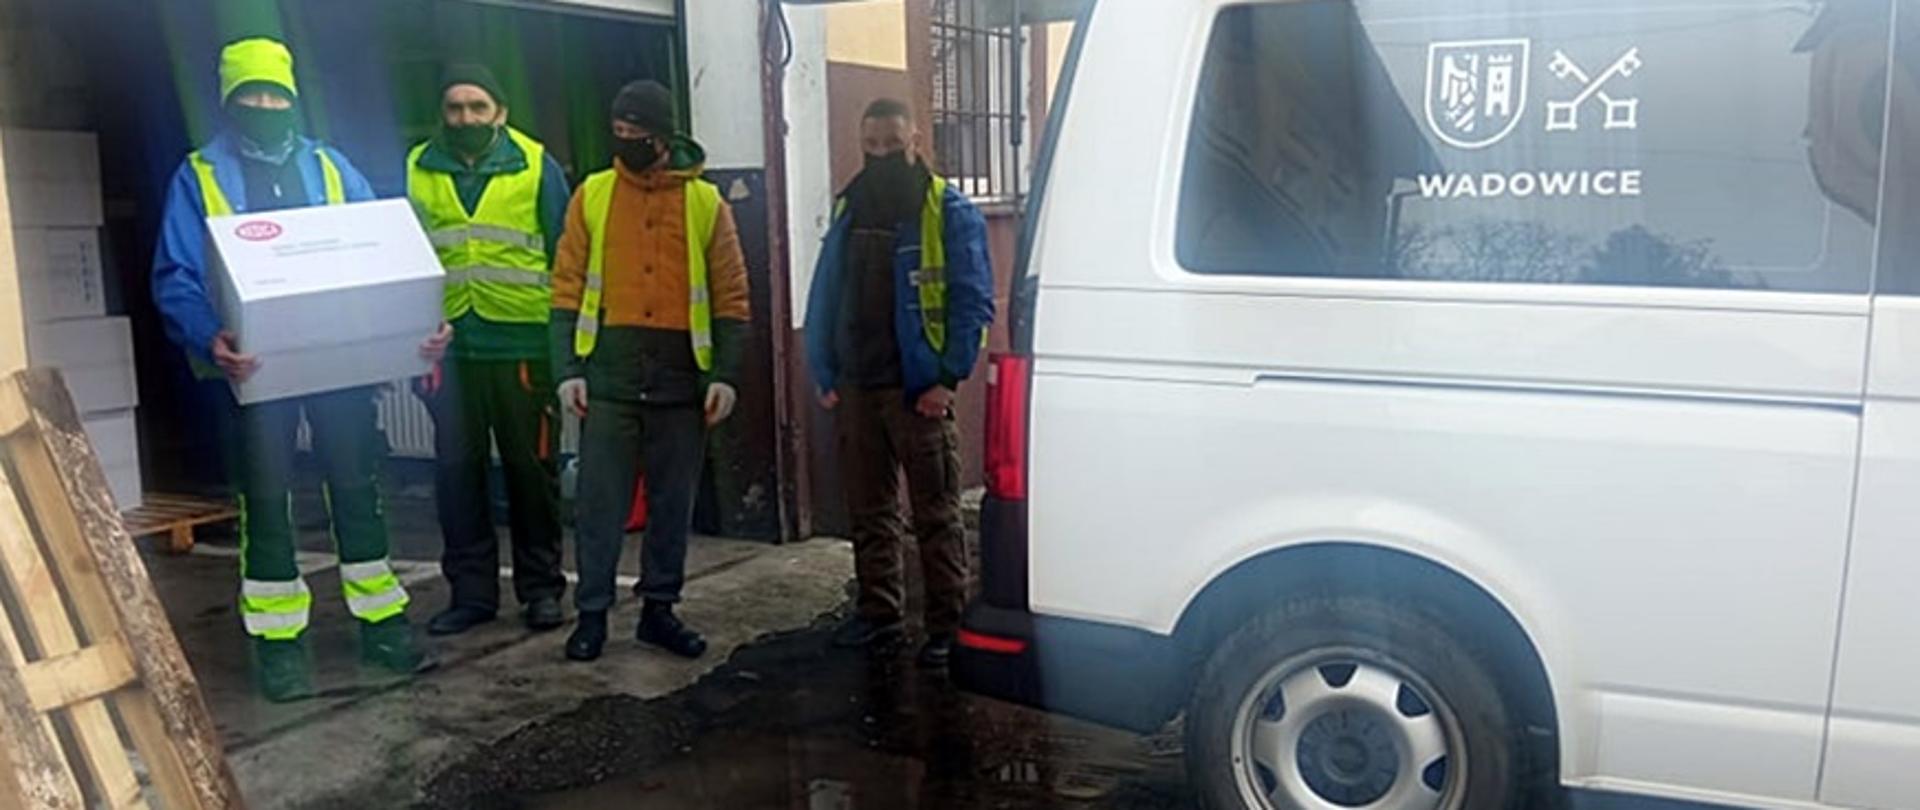 Czterej pracownicy samorządu lokalnego stoją przy samochodzie dostawczym, jeden z nich trzyma w rękach paczkę z maseczkami ochronnymi. 